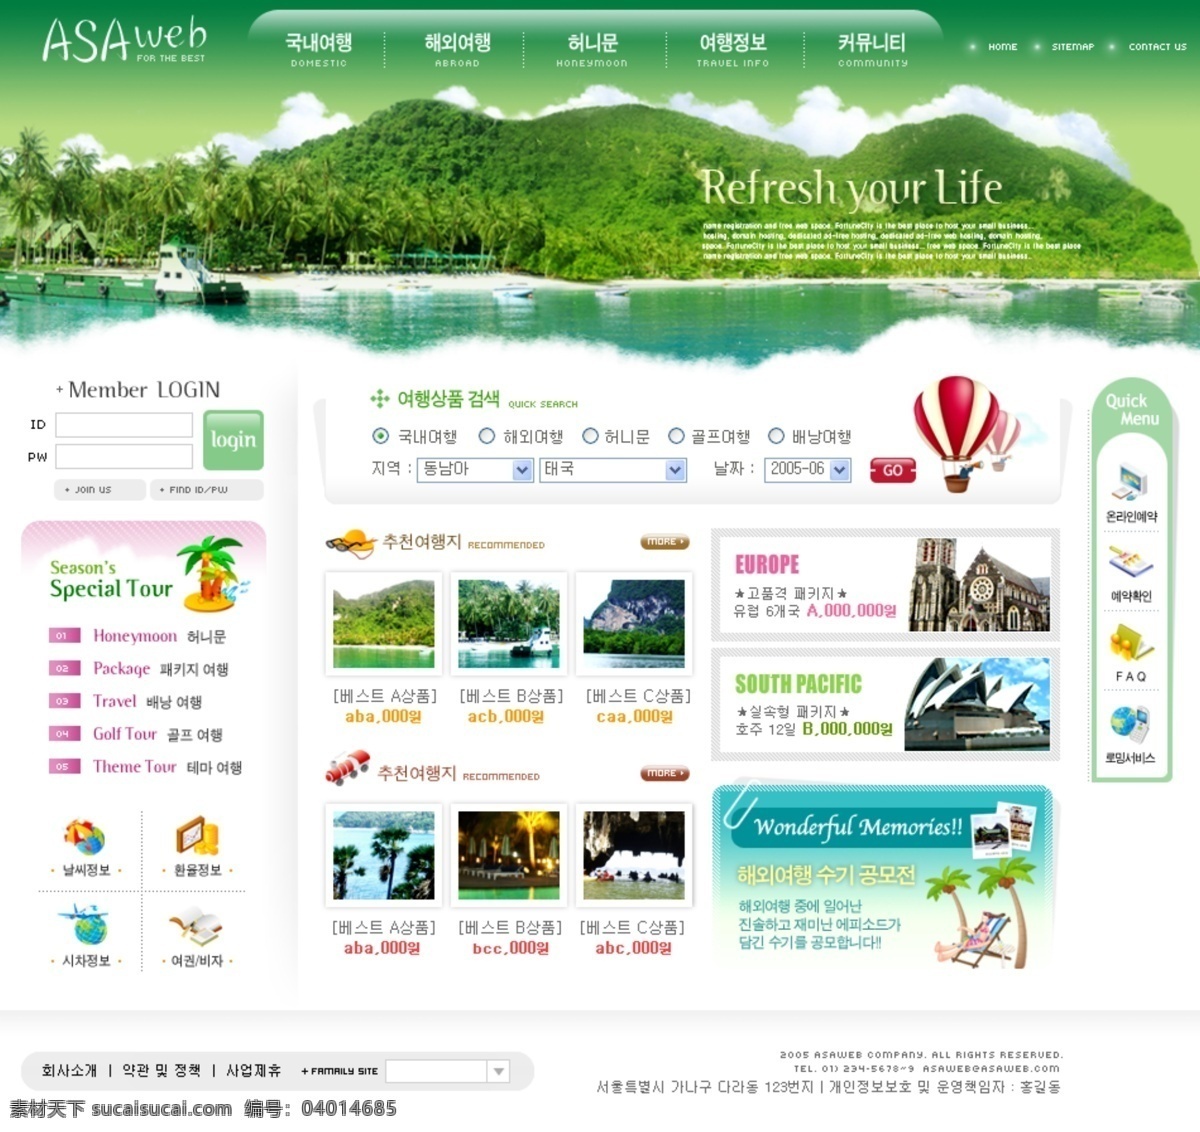 韩国 韩国模板 界面 旅游 旅游网页模板 网页模板 模板下载 模板 网页 源文件库 网页素材